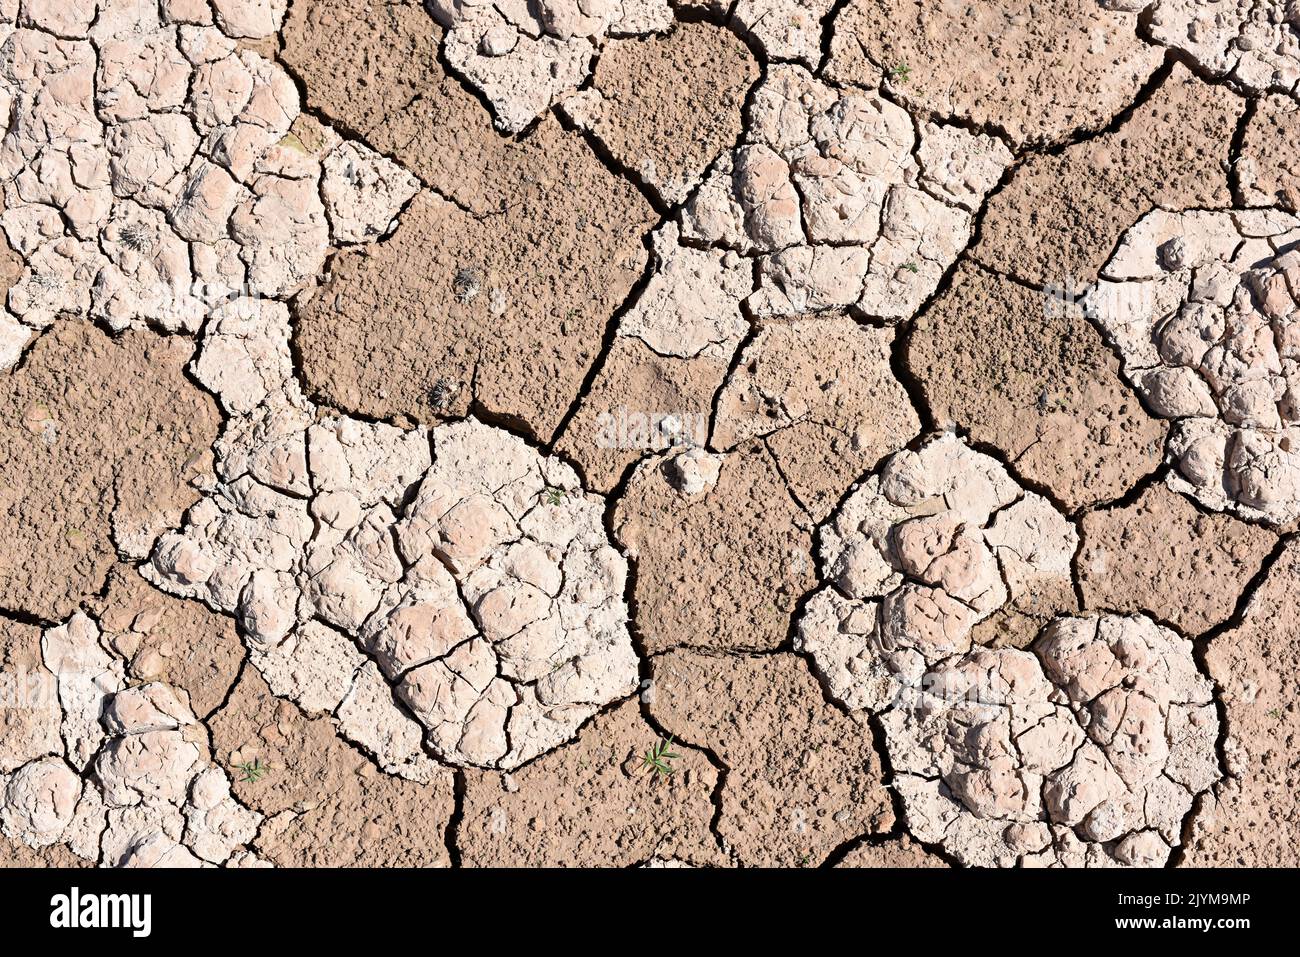 Tierra seca, cuarteada, debido a la sequía, producido por el cambio climático Foto de stock